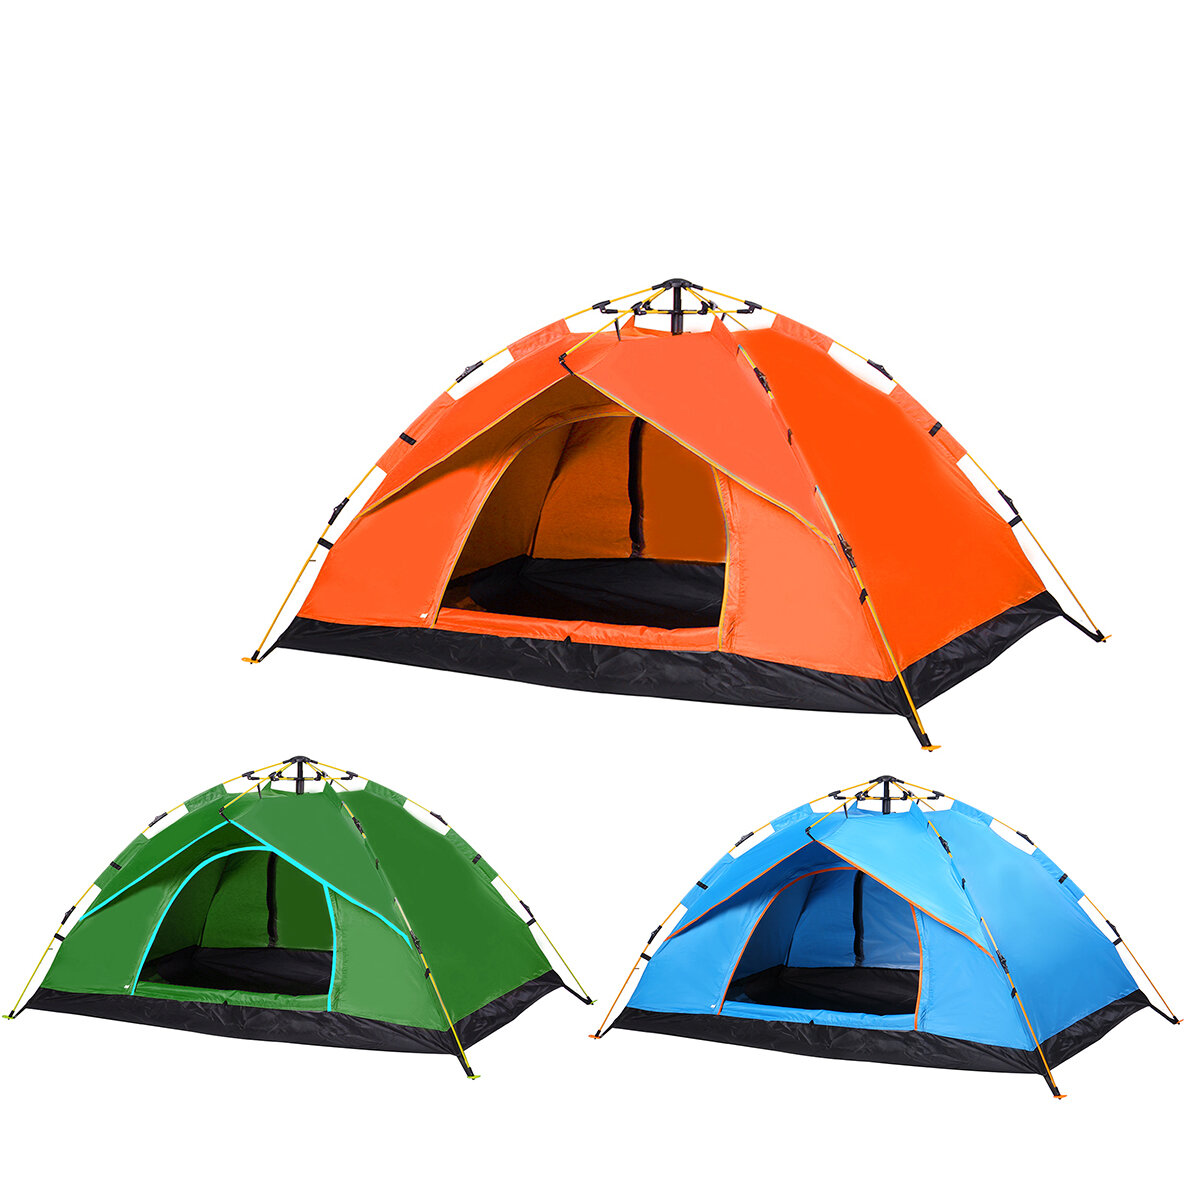 o: Tenda da campeggio automatica a singolo strato per una o due persone, pieghevole, spessa e impermeabile per viaggi e escursioni all'aperto.